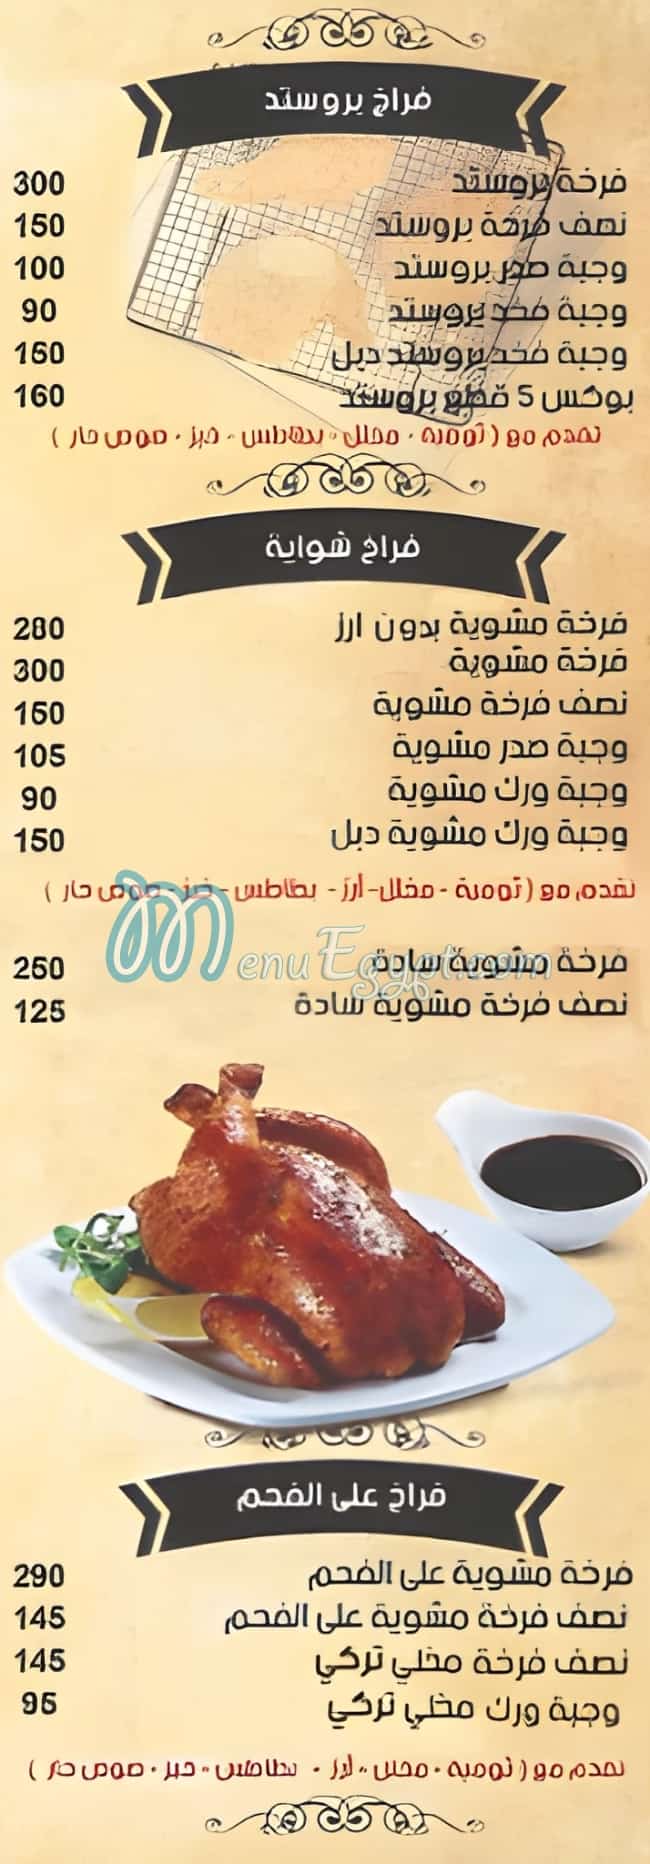 El Rayah Syrian Food delivery menu